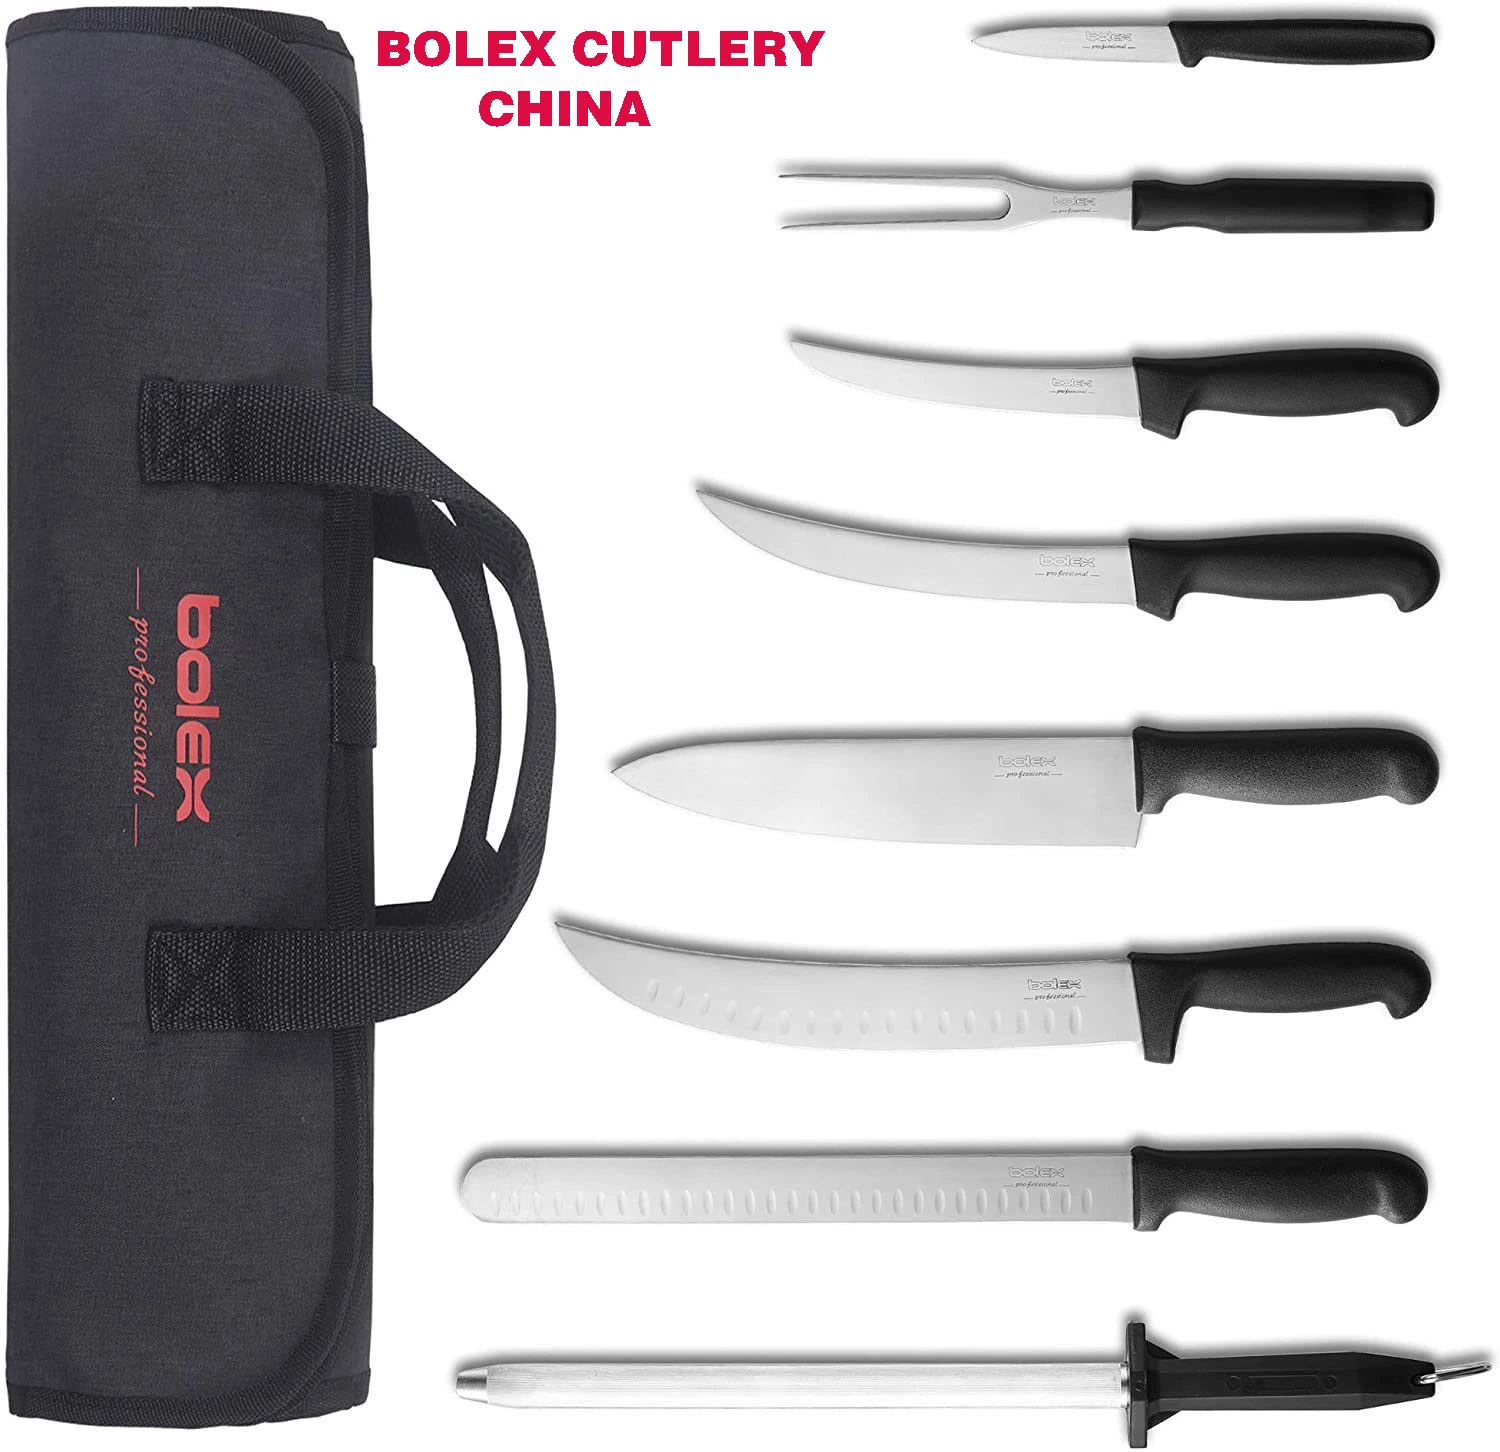 Bolex столовых приборов Китай Кухня шеф-повар набор ножей